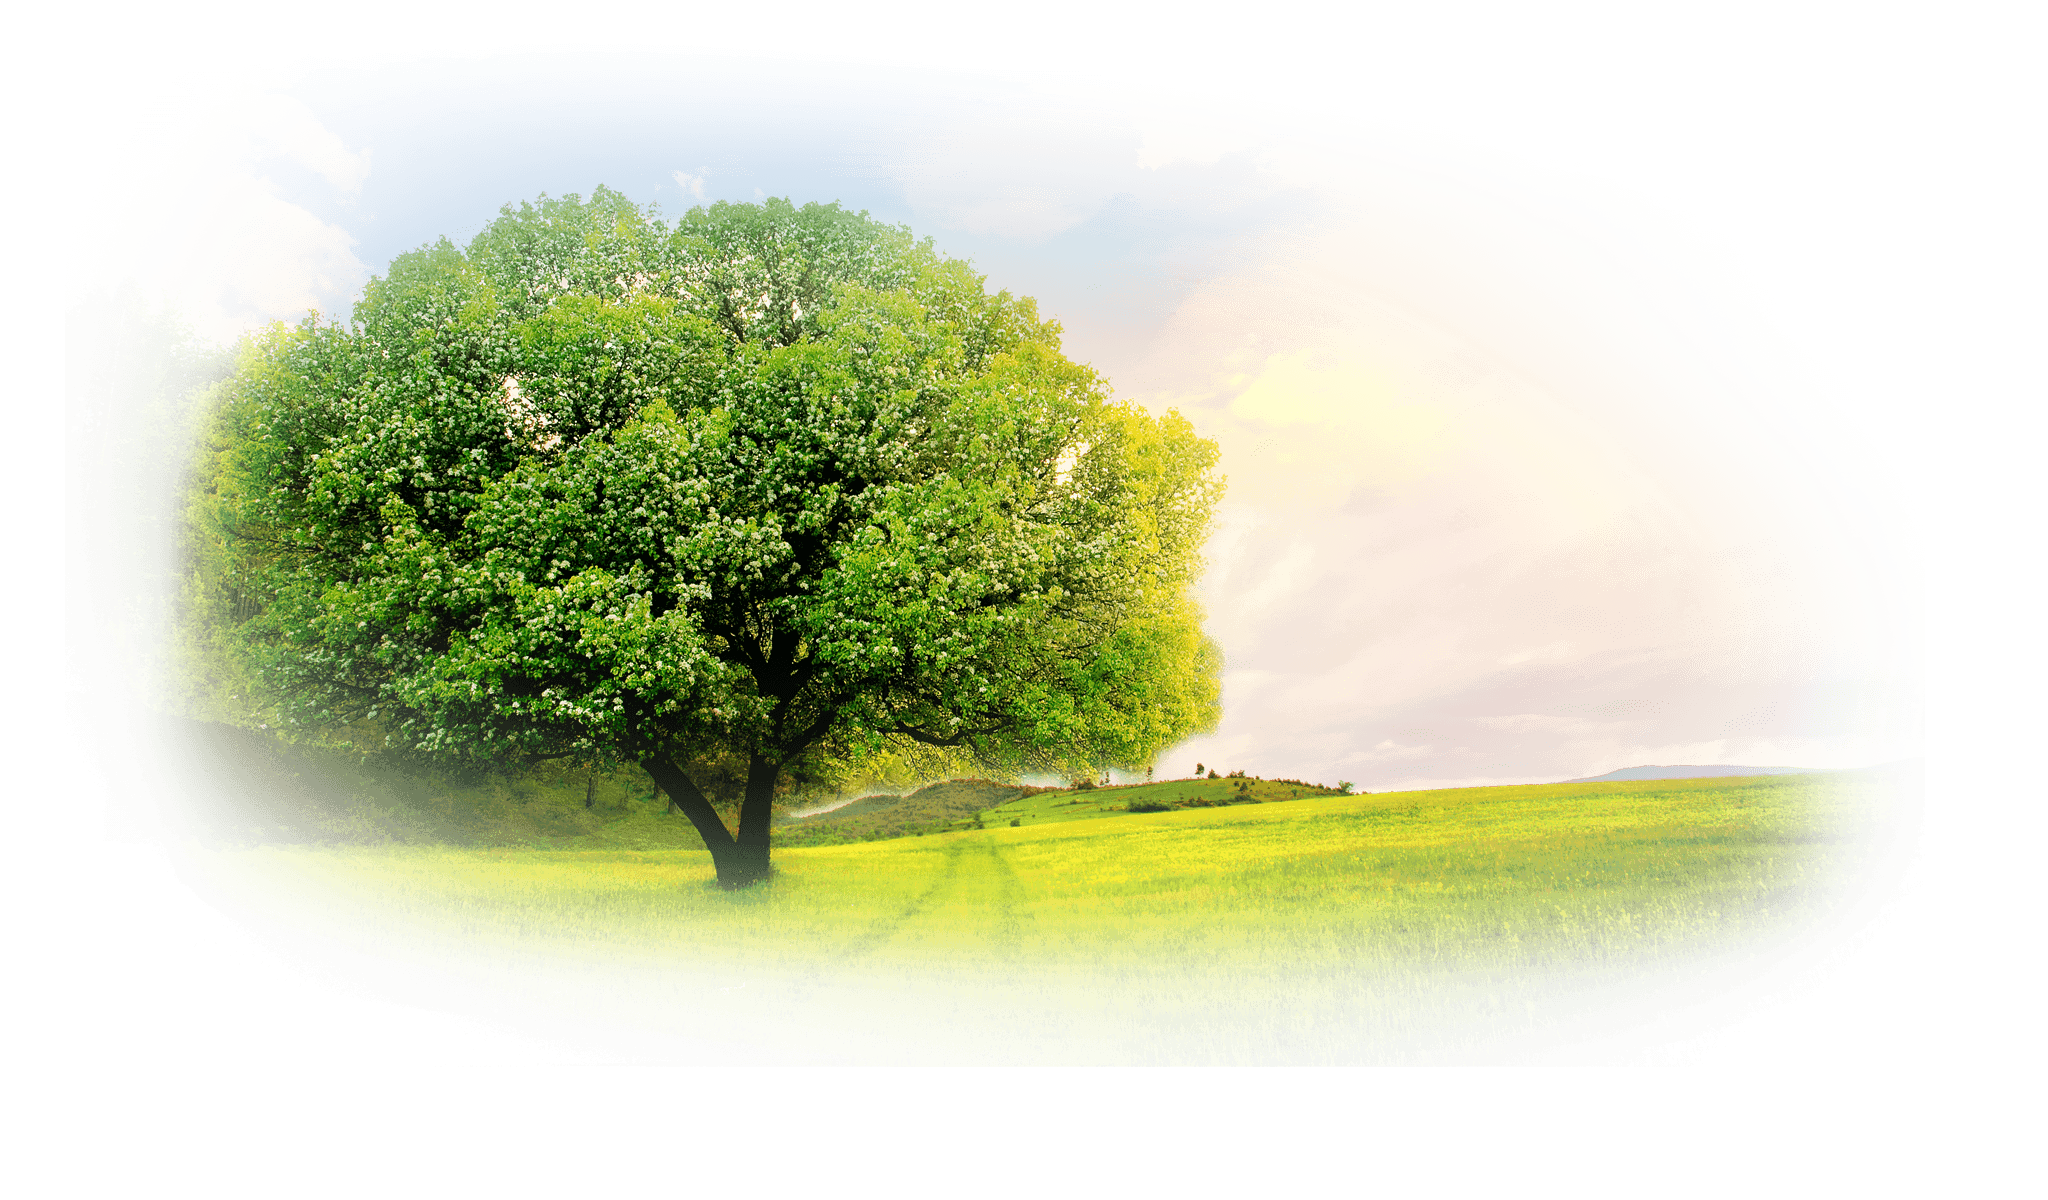 Árvore robusta em campo verde sob céu claro, que simboliza a natureza e a energia limpa do gás natural.